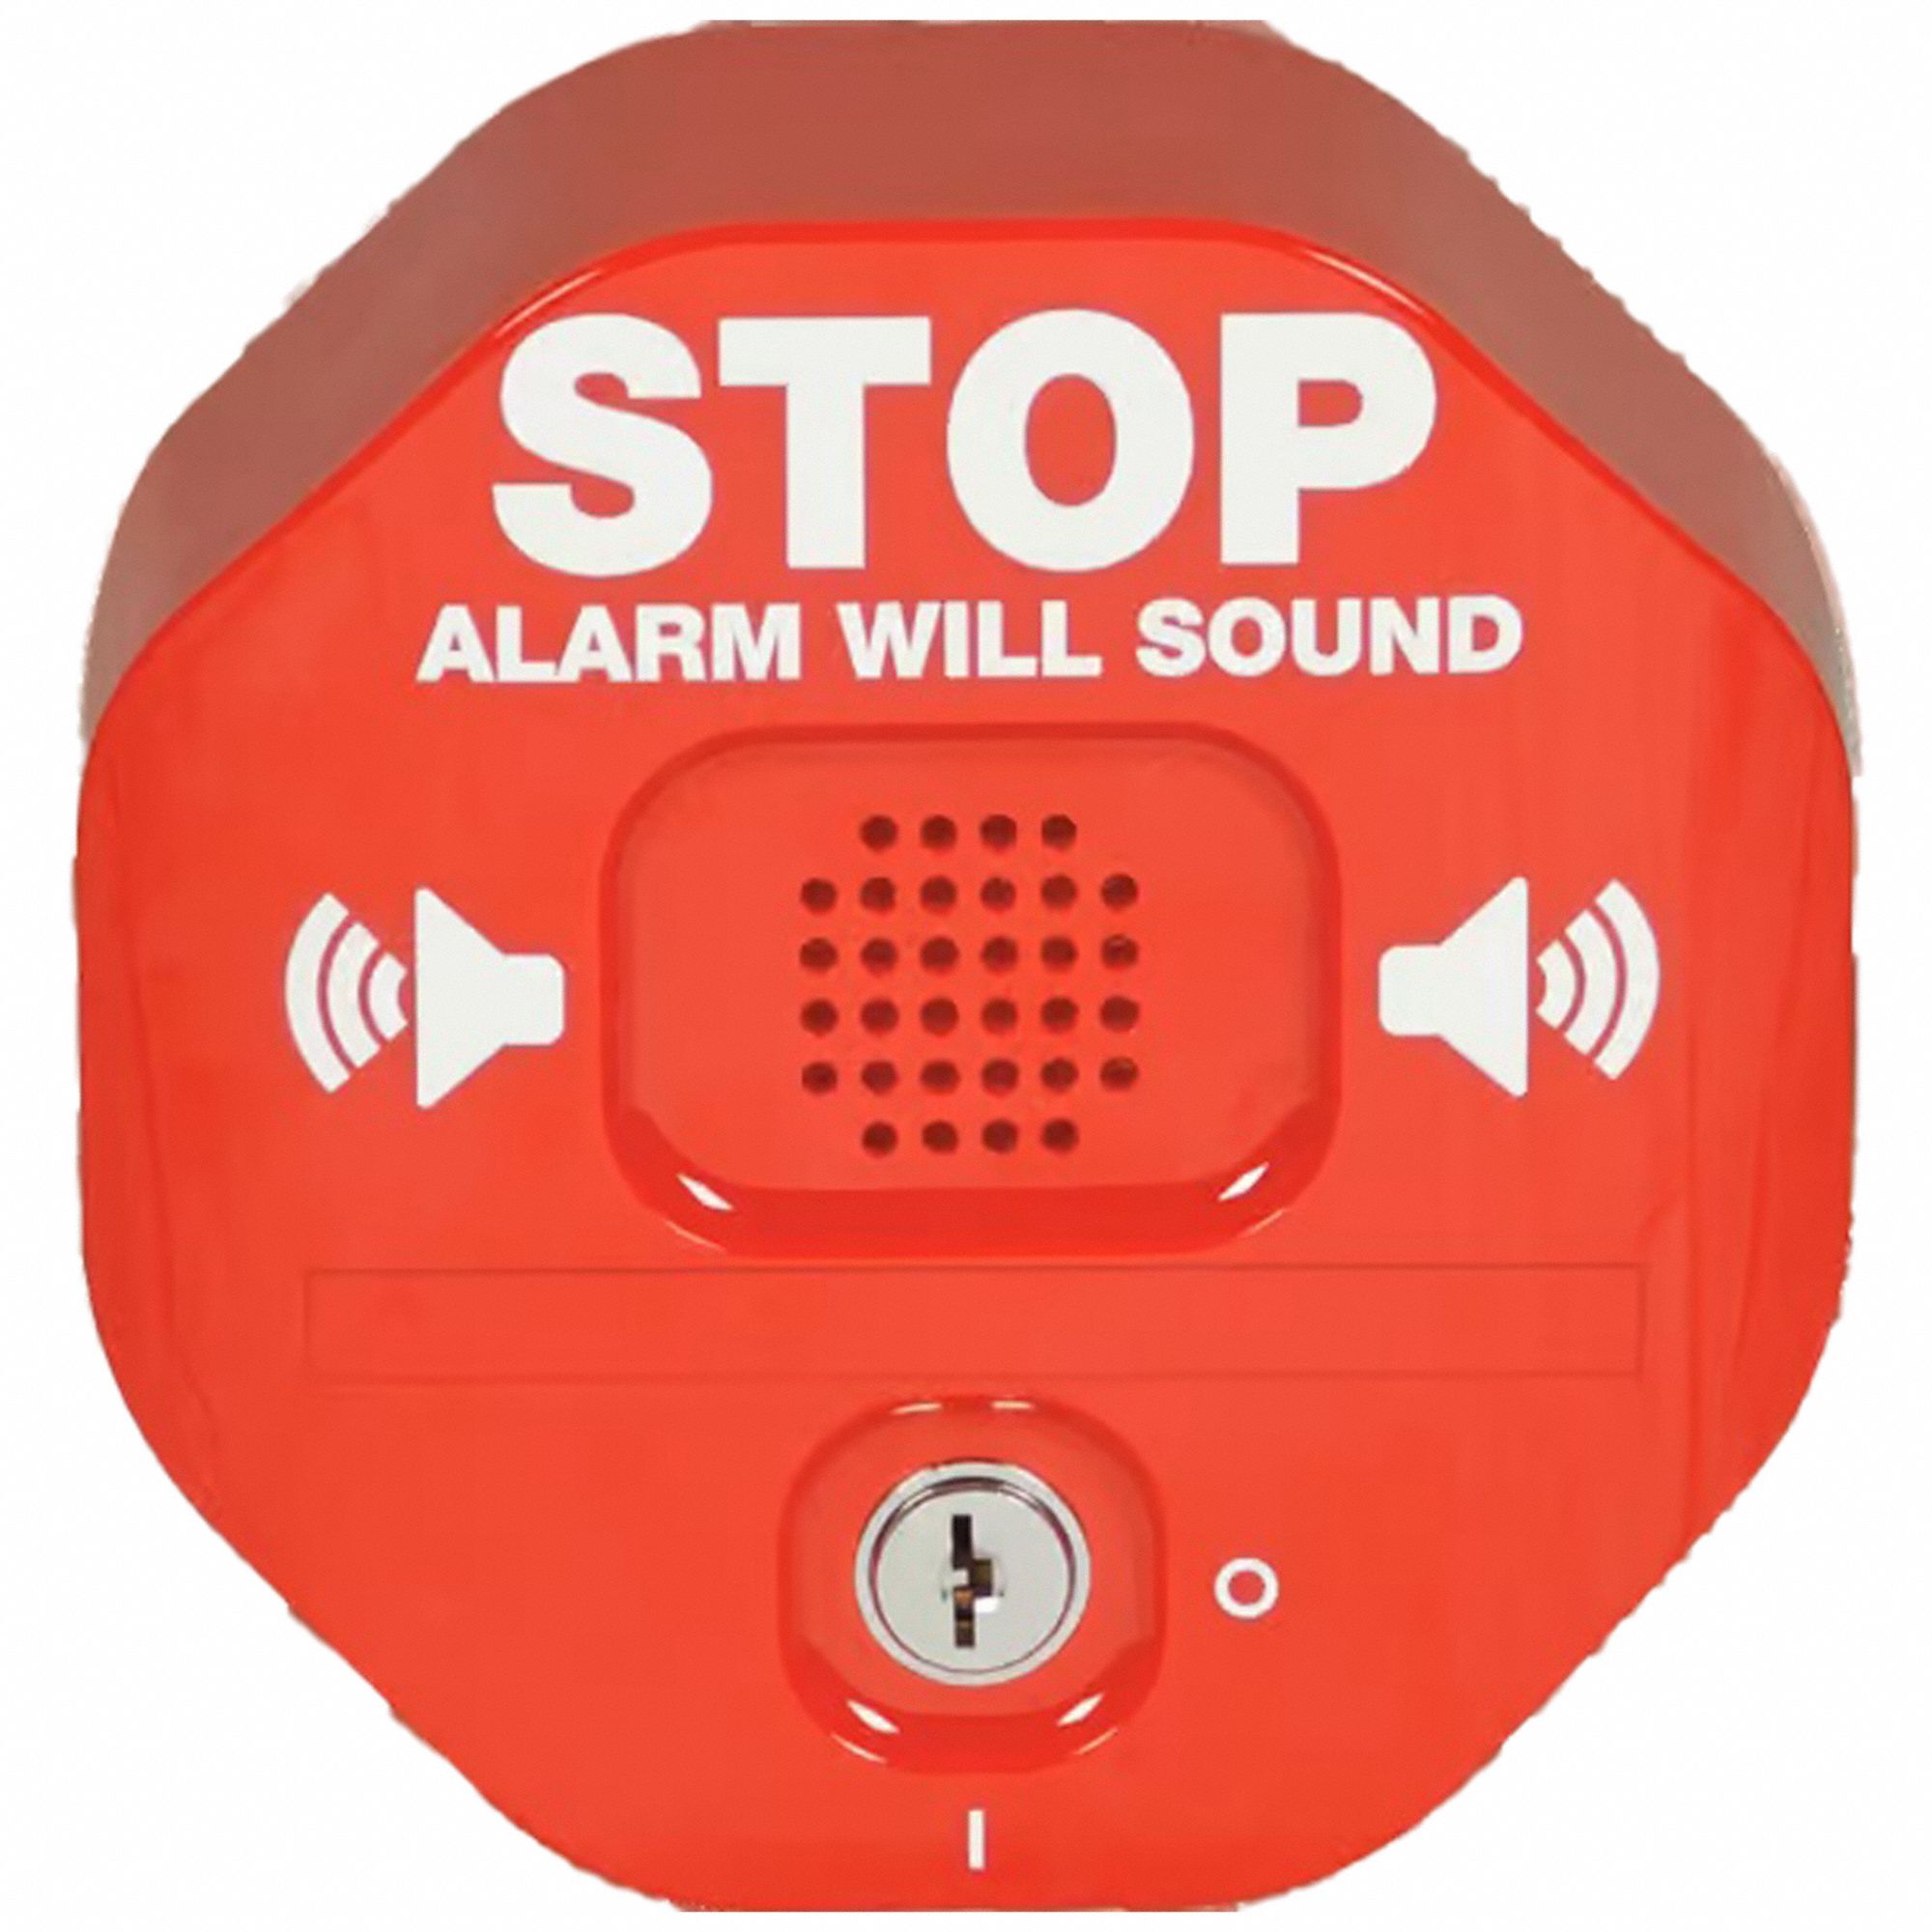 Alertas duales - Temporizador visual y audible - 99M59S, TR350